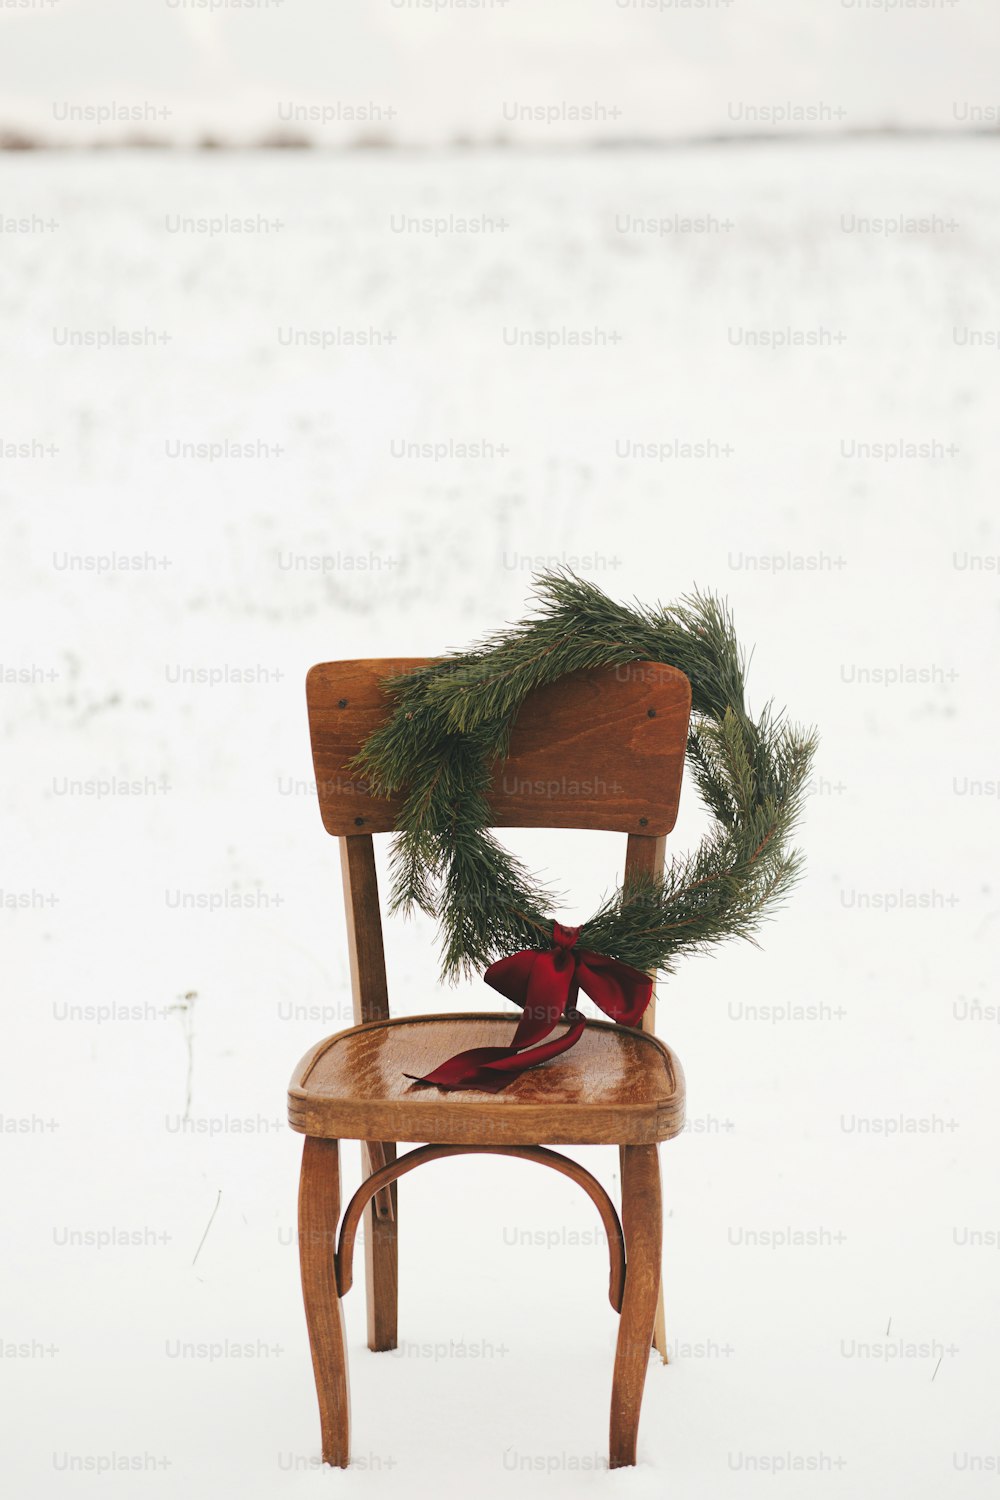 Buon Natale! Ghirlanda di Natale sulla sedia rustica nel campo invernale nevoso. Vacanze invernali in campagna. Spazio per il testo. Elegante ghirlanda natalizia con rami di pino e fiocco rosso appeso alla sedia di legno